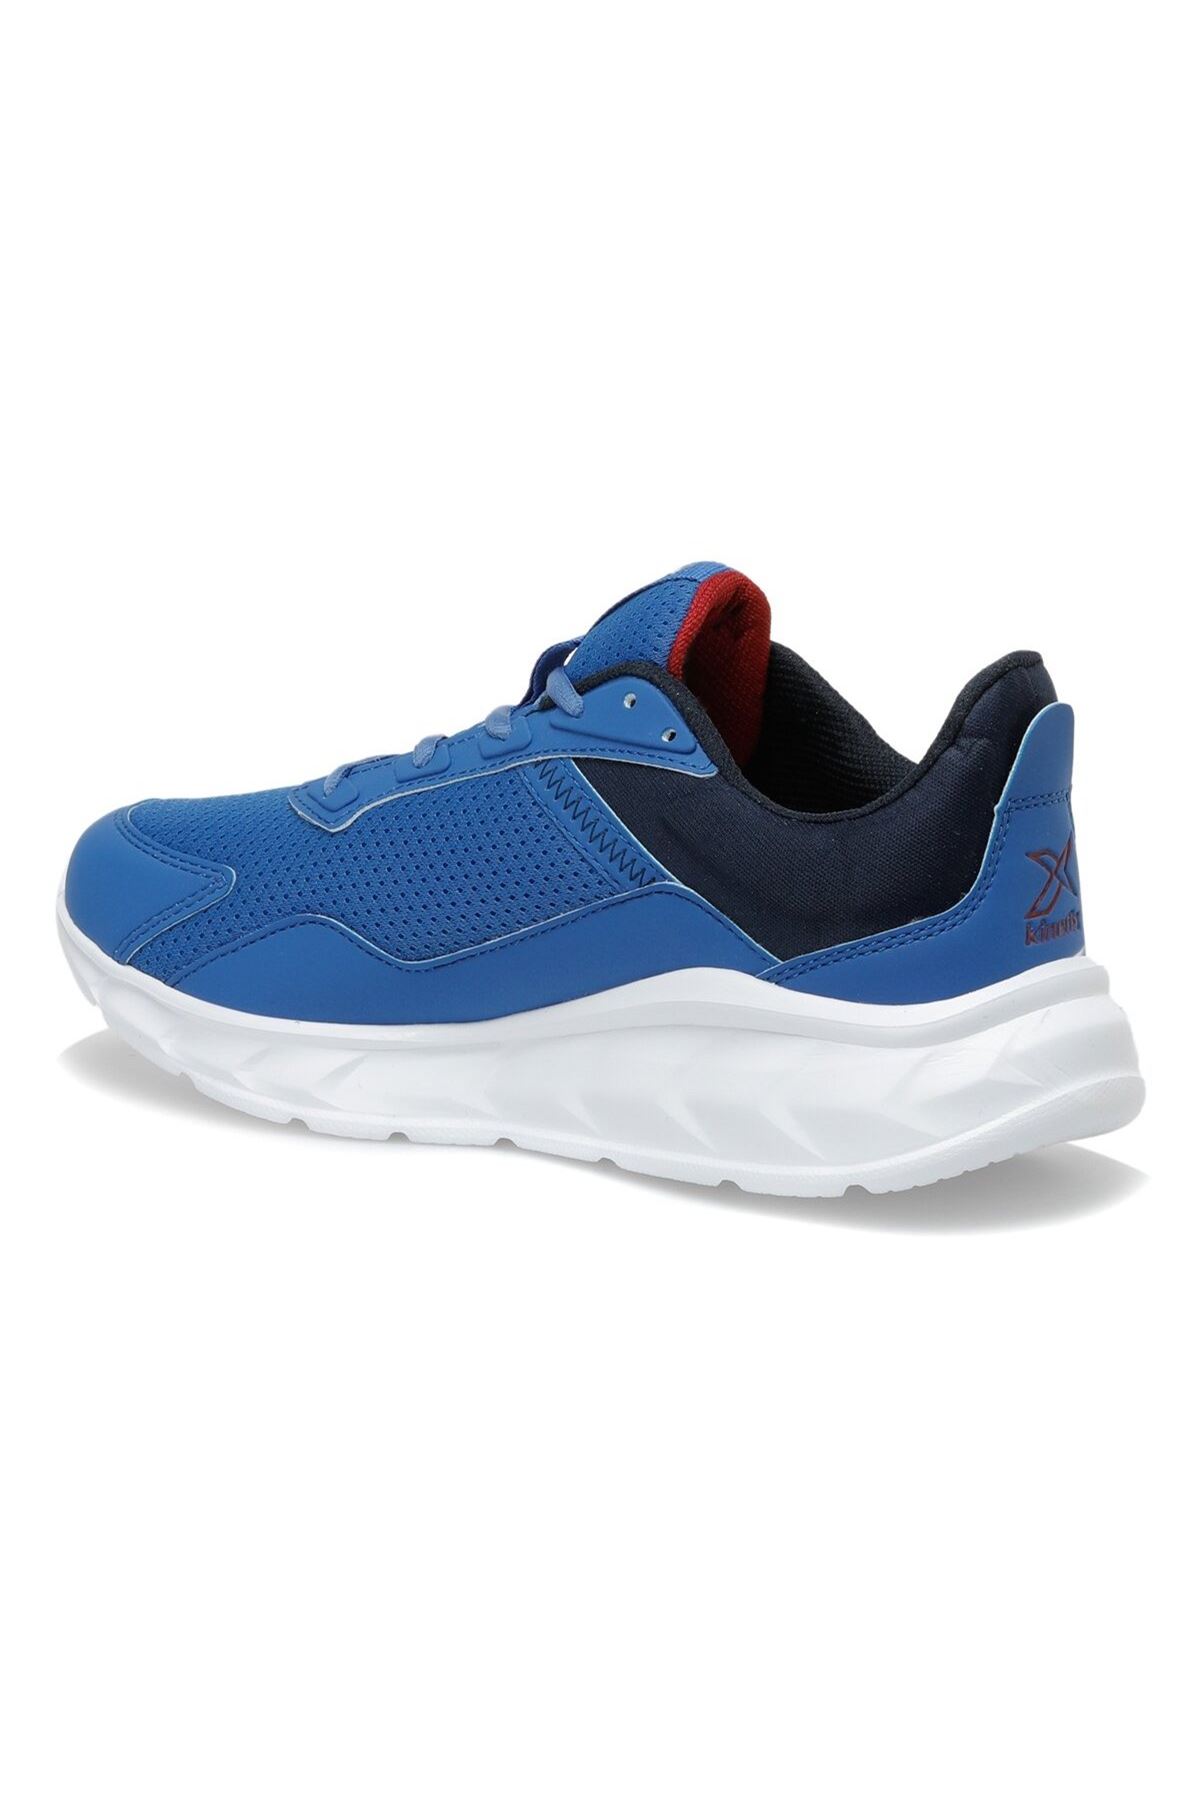 Kinetix Darius Erkek Spor Ayakkabı - Mavi